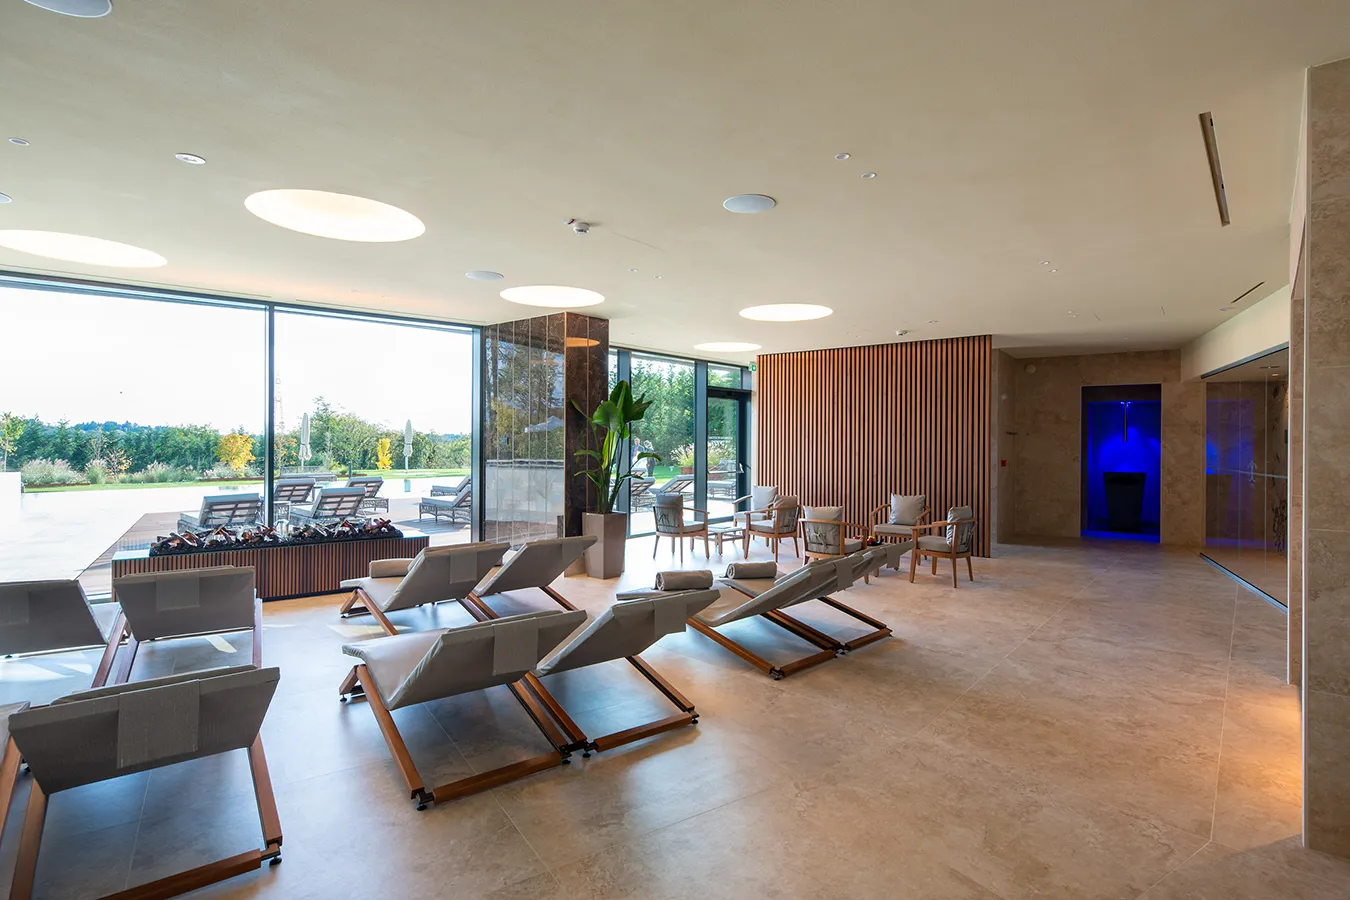 Salon SPA spacieux avec de belles dalles effet pierre et marbre, grandes fenêtres et chaises longues confortables.